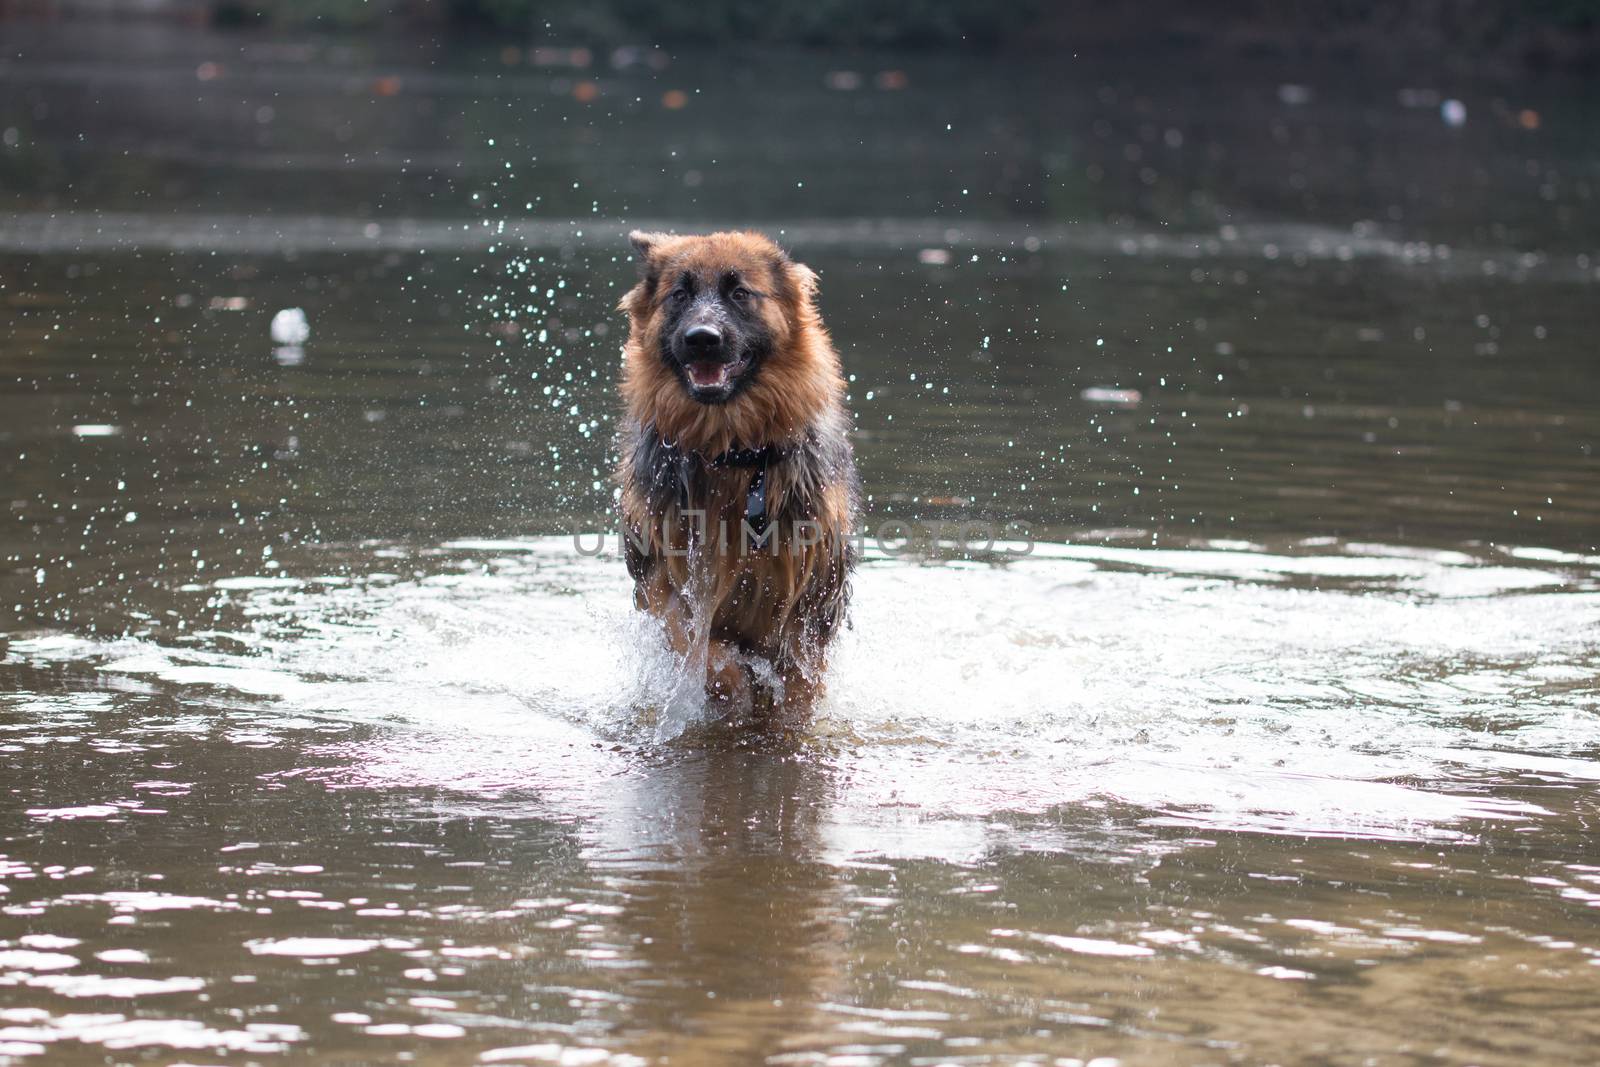 Dog, German Shepherd, running in water by avanheertum